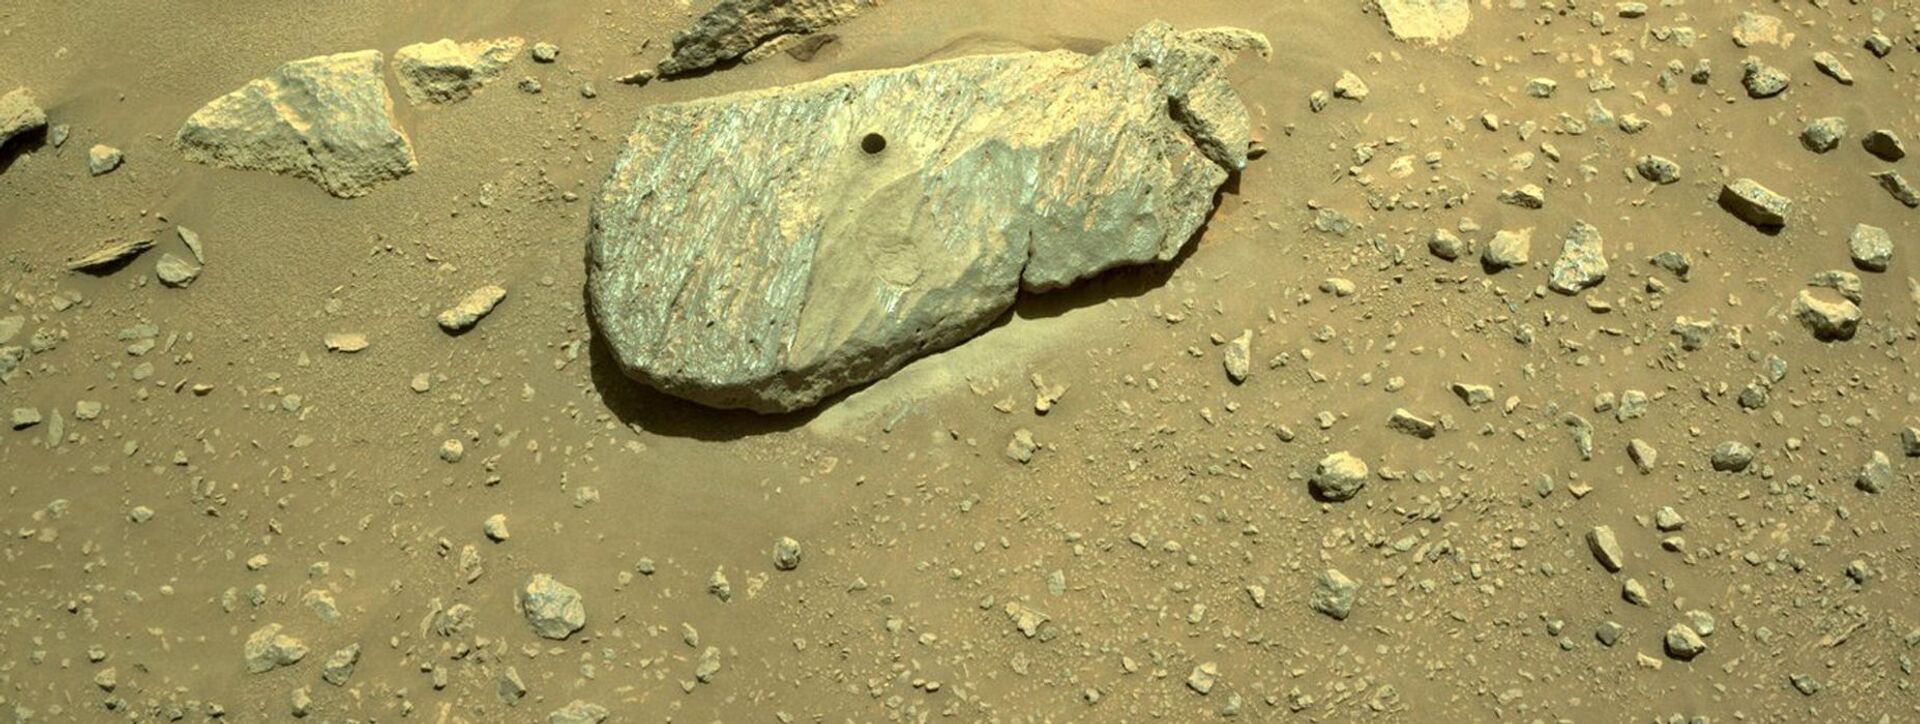 Composto de duas imagens obtidas por uma das câmeras de navegação do rover Perseverance da NASA mostra o buraco perfurado durante sua segunda tentativa de coleta de amostras. As imagens, tiradas em 1º de setembro de 2021 (no 190º sol, ou dia marciano, da missão) na unidade geológica Cratera de Piso Fraturado Rugoso na Cratera Jezero de Marte. A equipe de pesquisa apelidou a rocha de Rochette e o local na rocha onde a amostra foi obtida de Montdenier - Sputnik Brasil, 1920, 09.11.2021